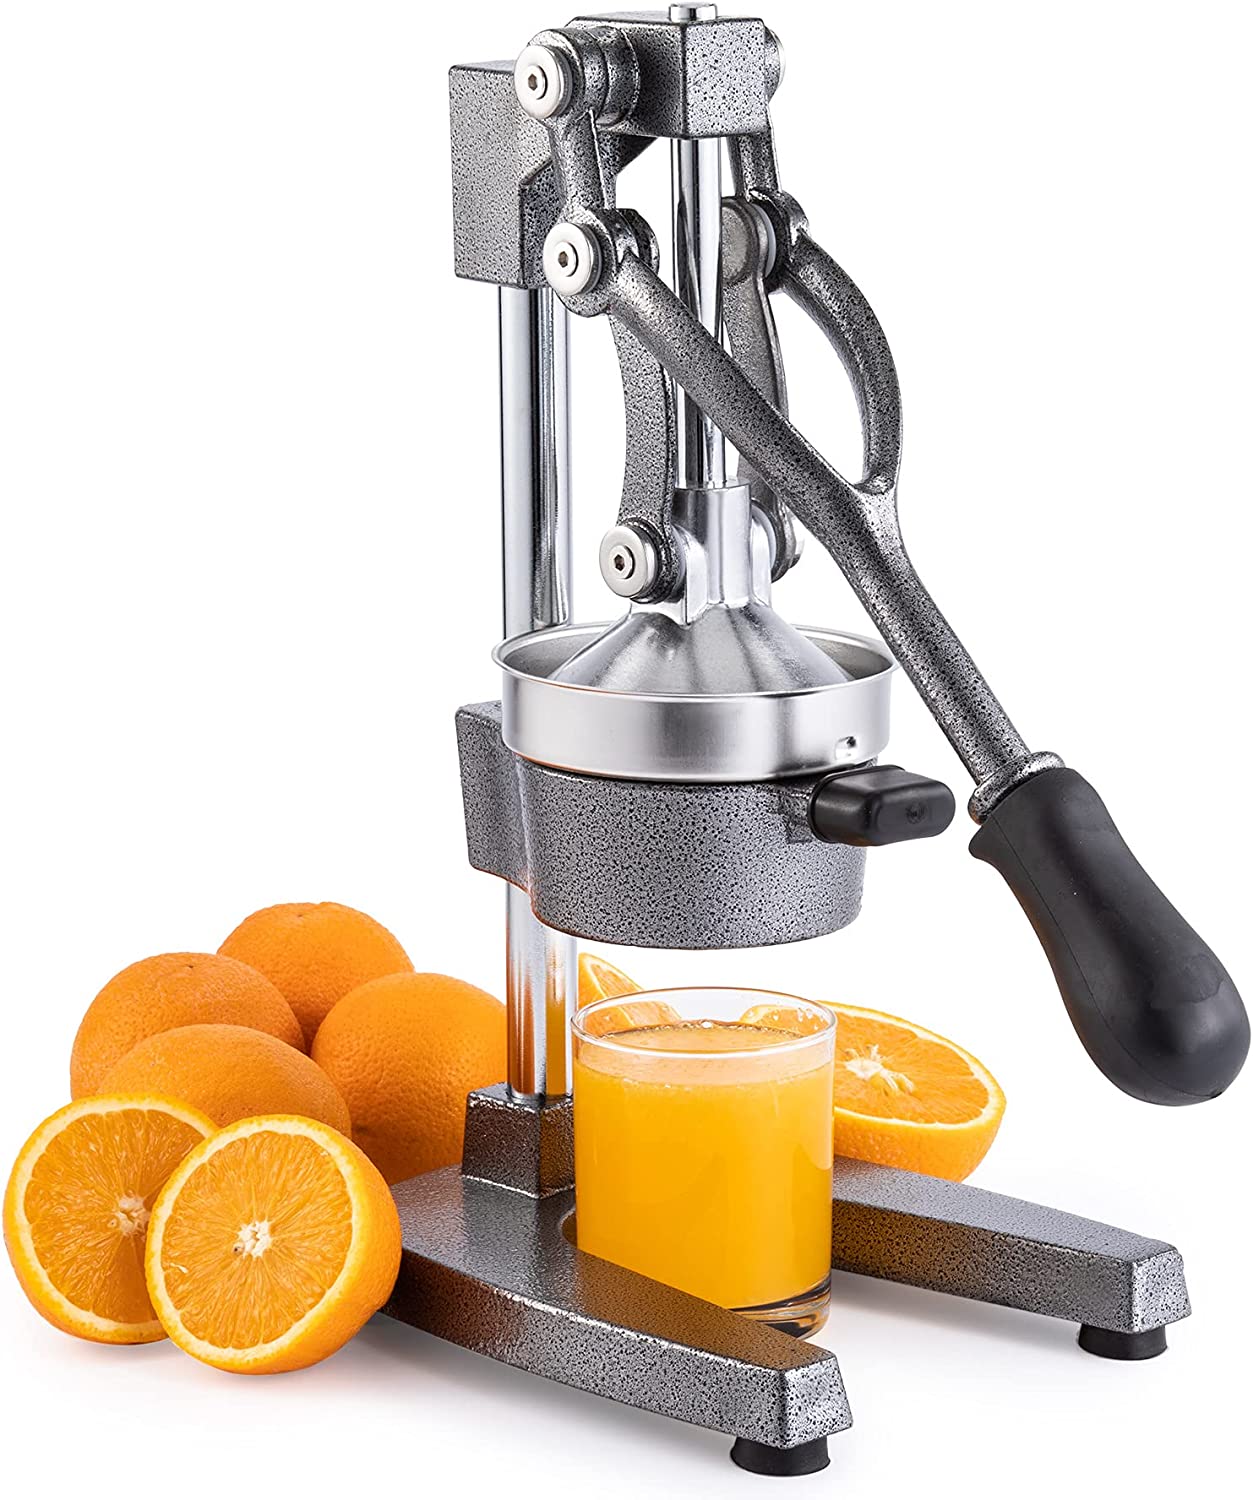 Hand Press Juicer Machine Manual Orange Juicer and Professional Citrus Juicer for Oranges.